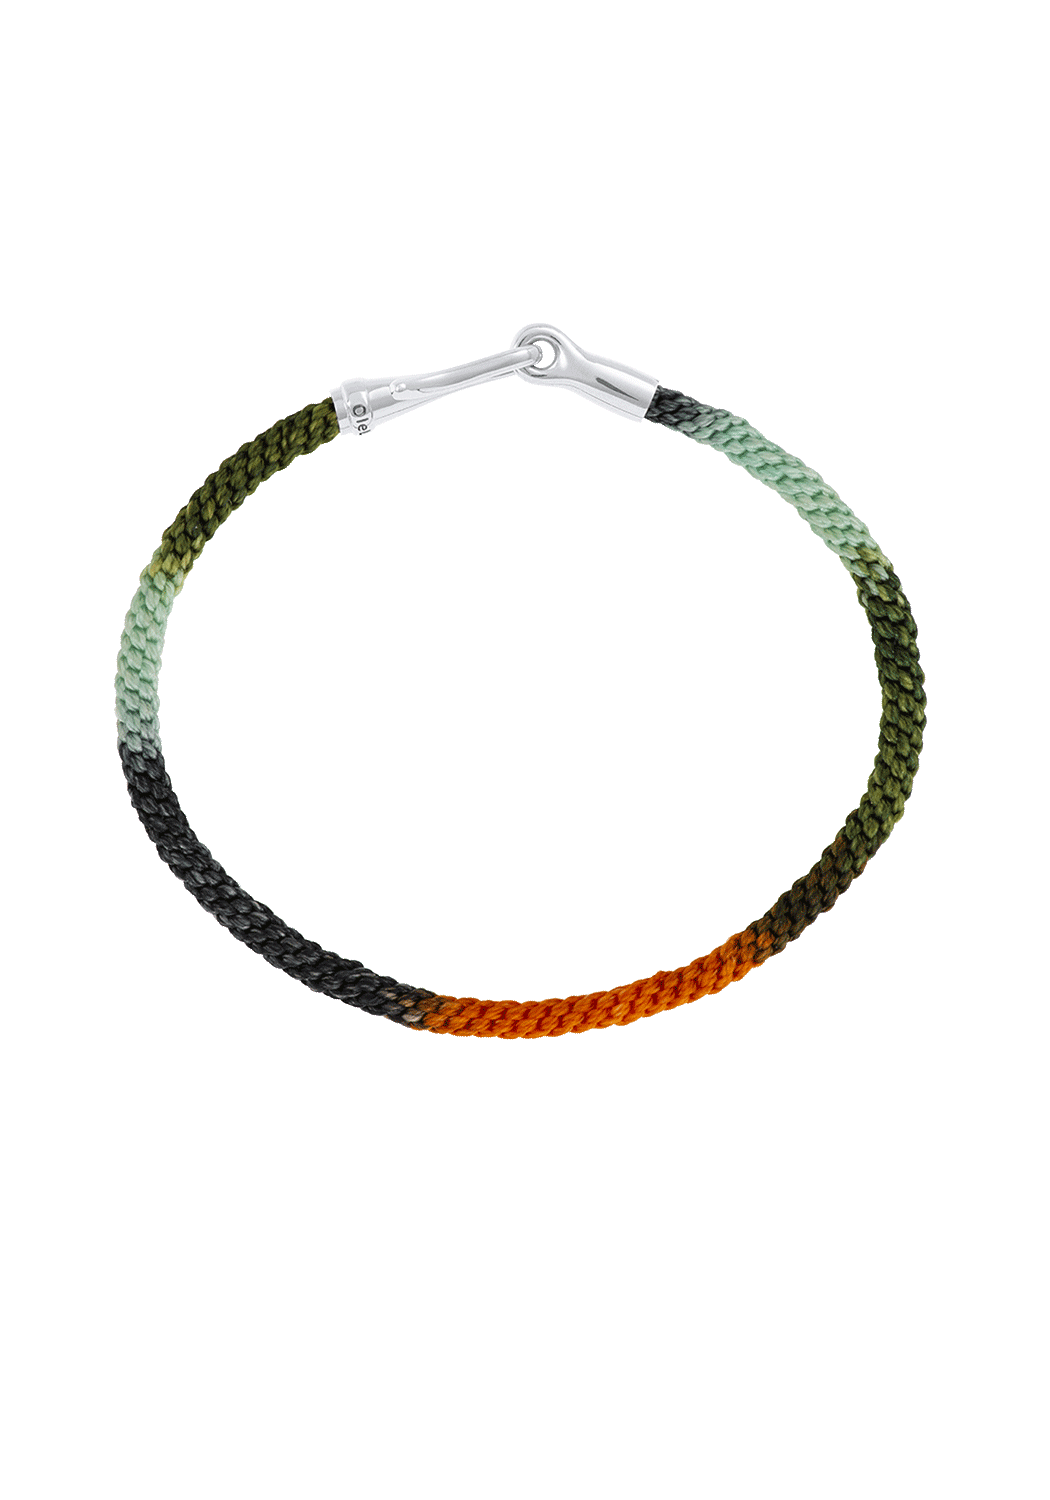 Ole Lynggaard Life 18KWG Tropic Rope Bracelet | Ref. A3040-512